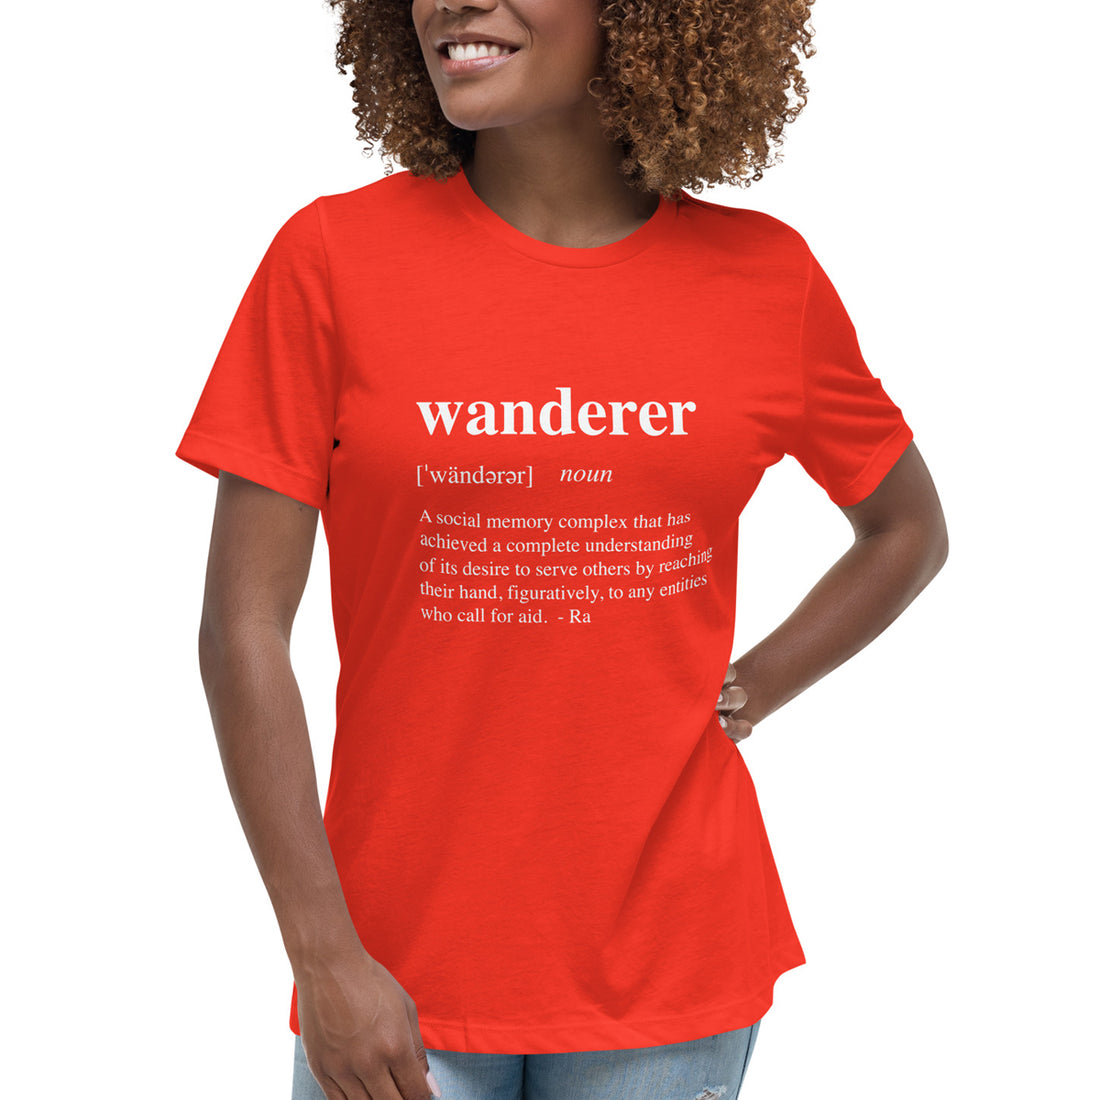 Wanderer - Women's Relaxed T-Shirt